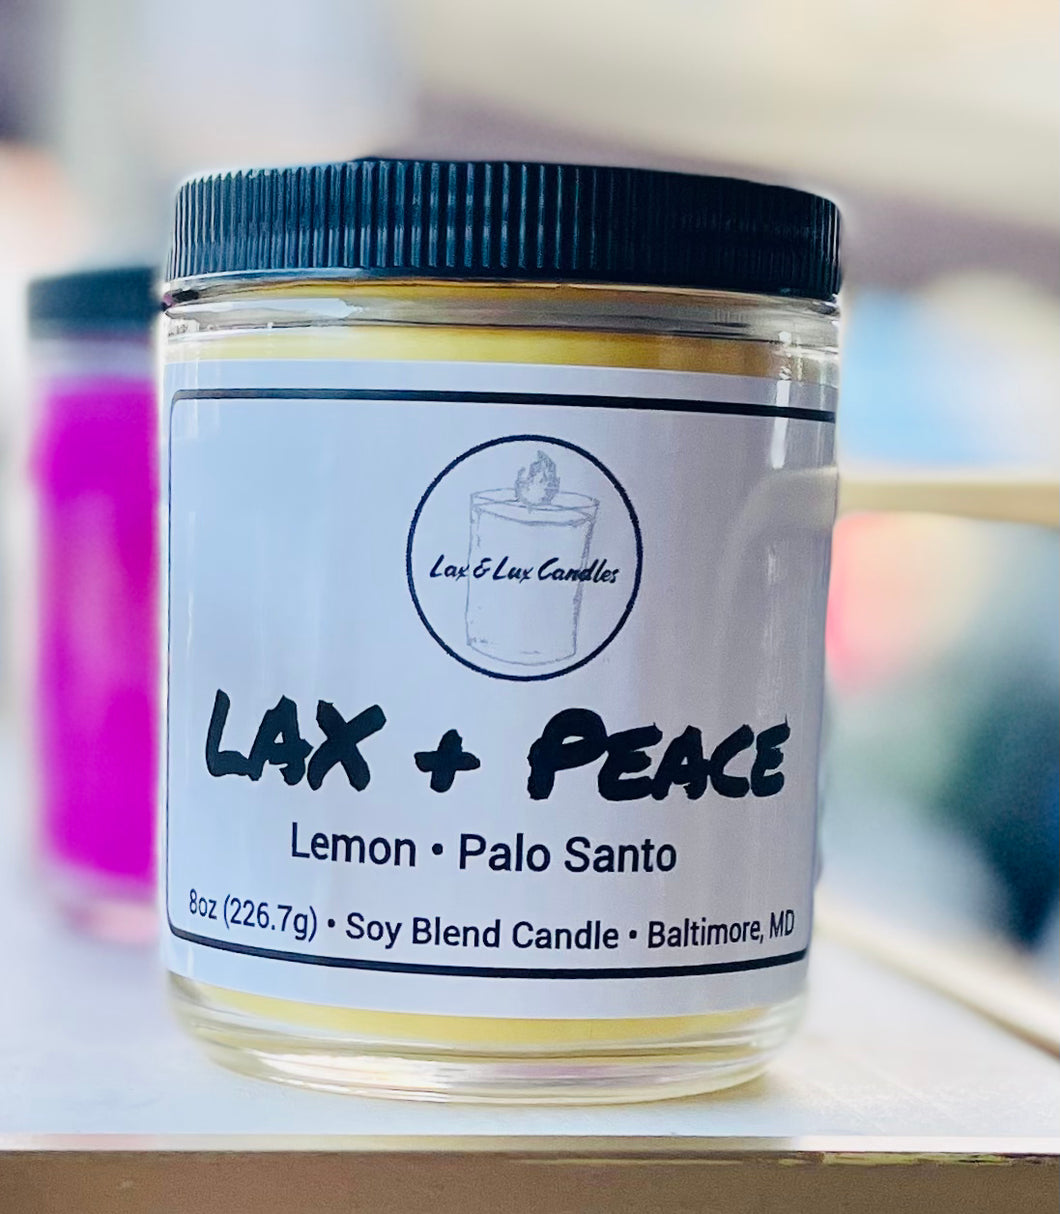 Lax + Peace - 8 oz Jar Candle